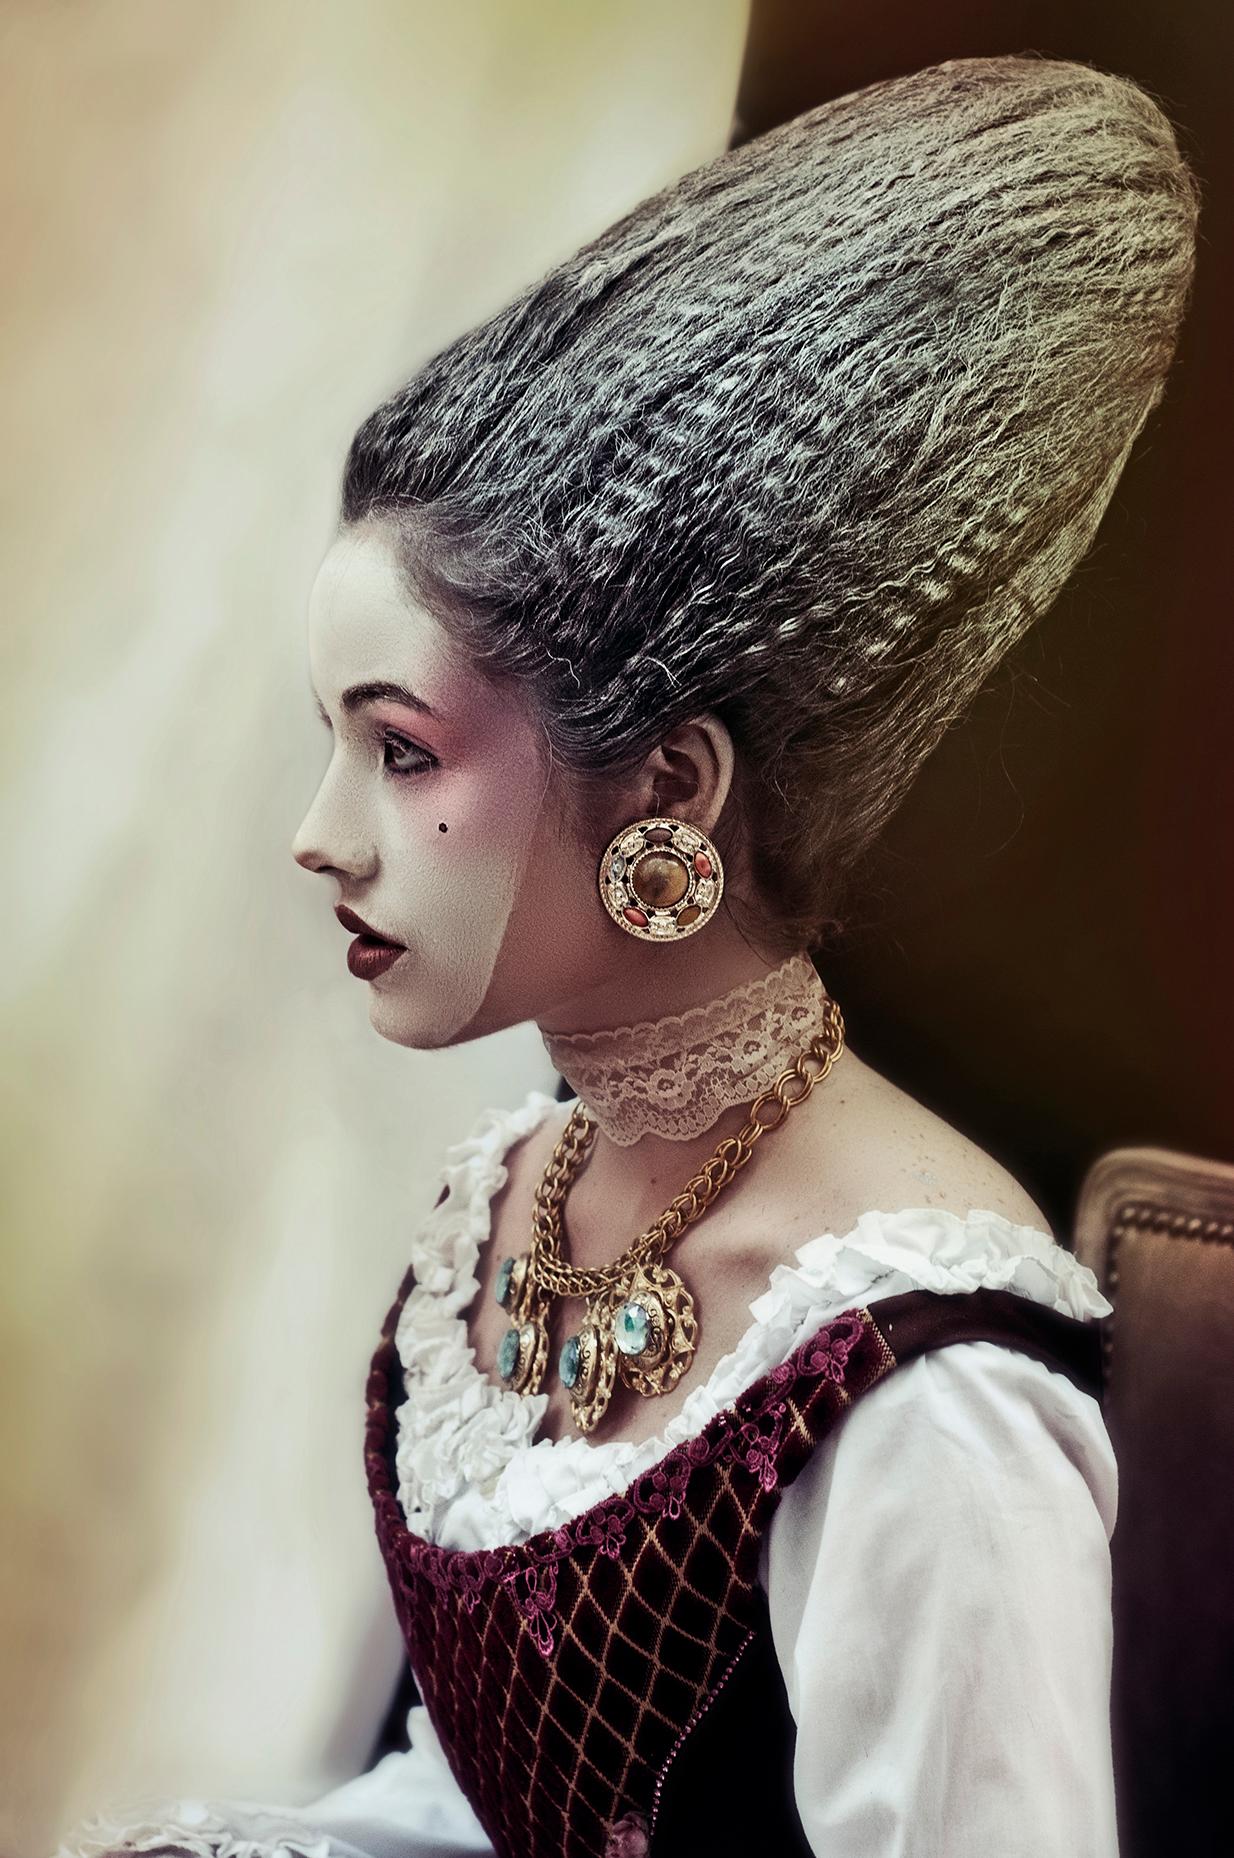 Lèa Bon Color Photograph – Maske des Lebens, Porträt. Limitierte Auflage eines Mode-Farbfotos. 